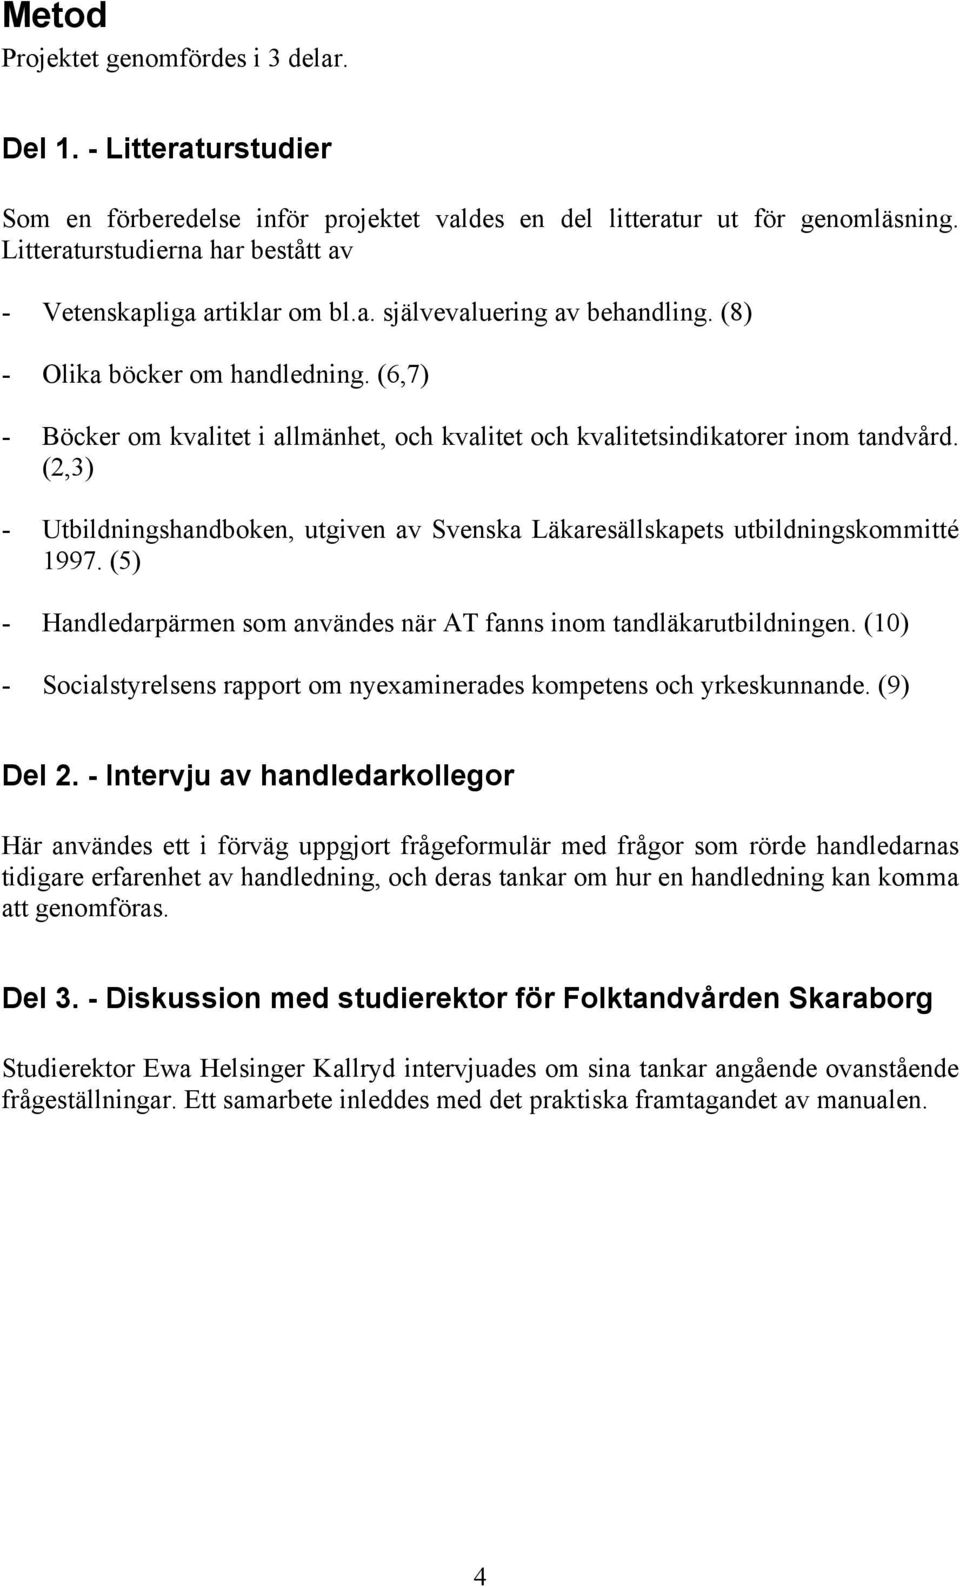 (6,7) - Böcker om kvalitet i allmänhet, och kvalitet och kvalitetsindikatorer inom tandvård. (2,3) - Utbildningshandboken, utgiven av Svenska Läkaresällskapets utbildningskommitté 1997.